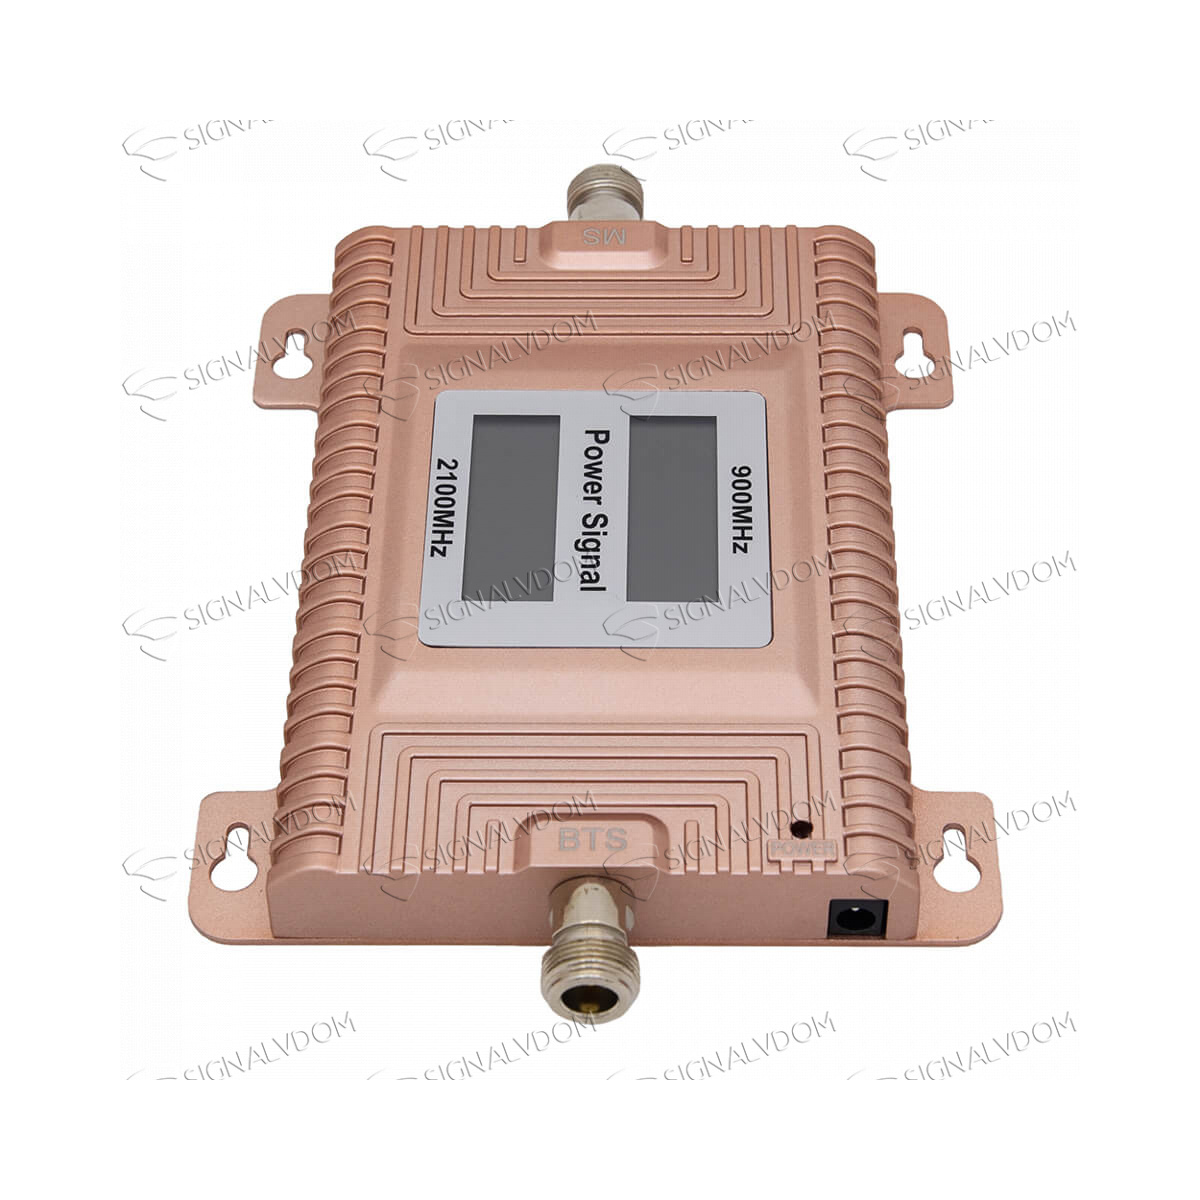 Усилитель сигнала связи Power Signal Standard 900/2100 MHz (для 2G, 3G) 70 dBi, кабель 15 м., комплект - 5